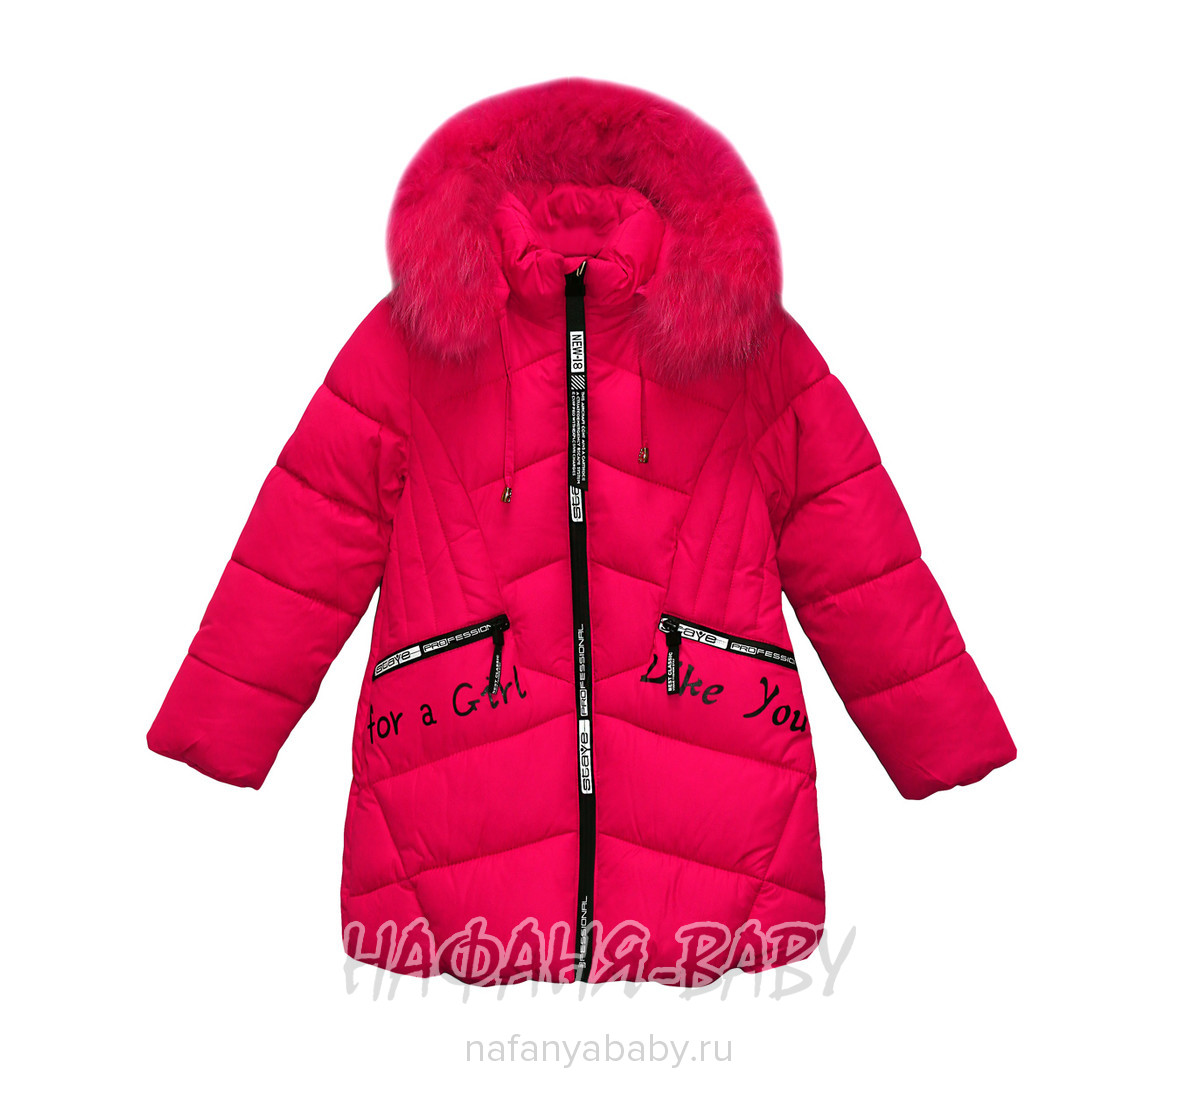 Детская зимняя куртка L-Z, купить в интернет магазине Нафаня. арт: 2715.